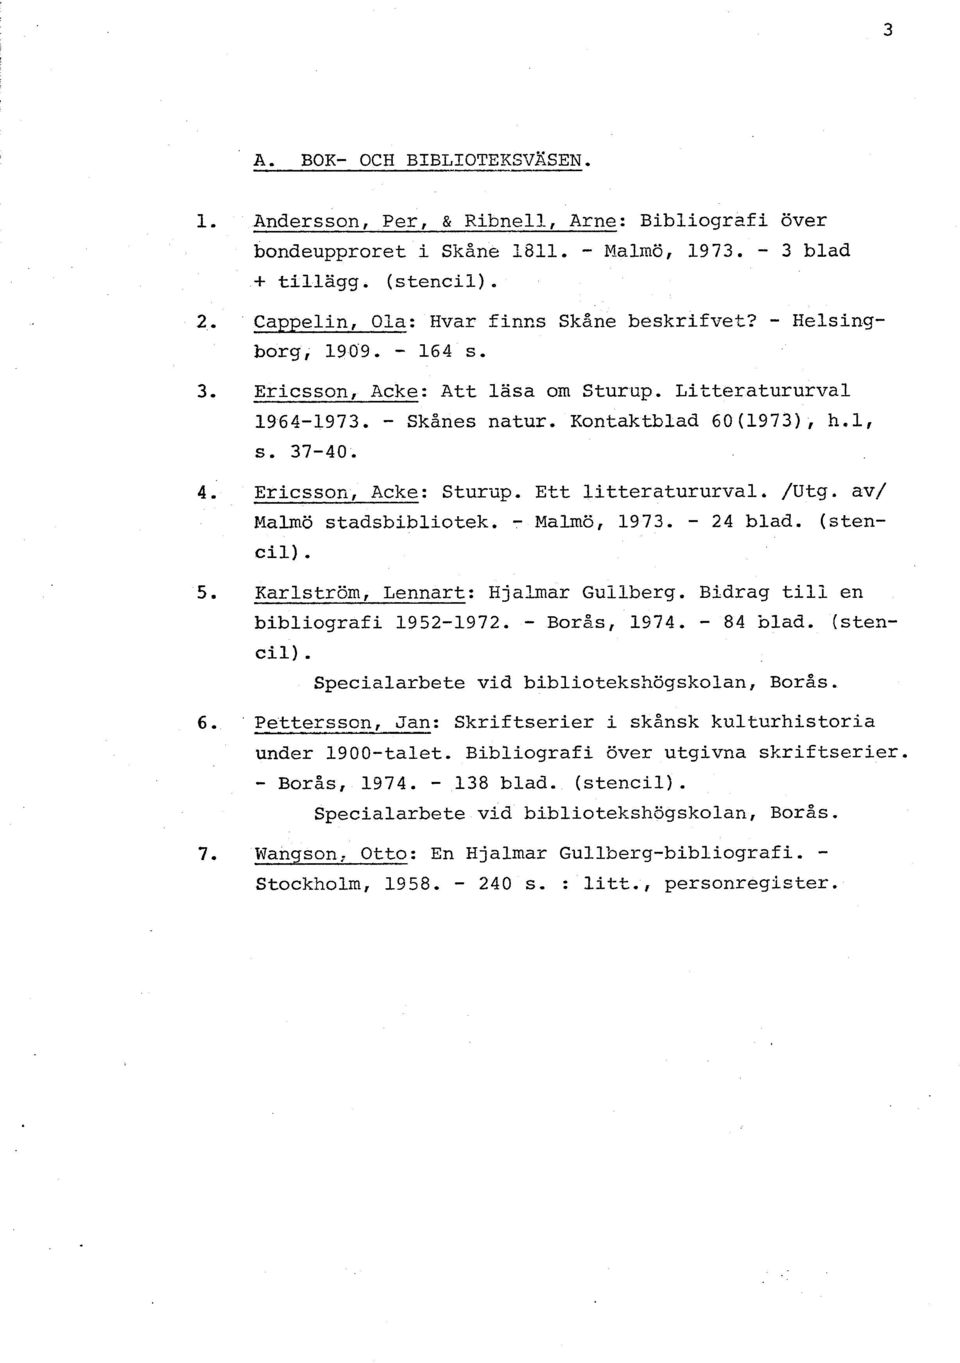 Ericsson, Acke: Sturup. Ett litteratururval. /~tg. av/ Malmö stadsbibliotek. - Malmö, 1973. - 24 blad. (sten- cil). 5. Karlström, Lennart: Hjalmar Guilberg. Bidrag till en bibliografi 1952-1972.